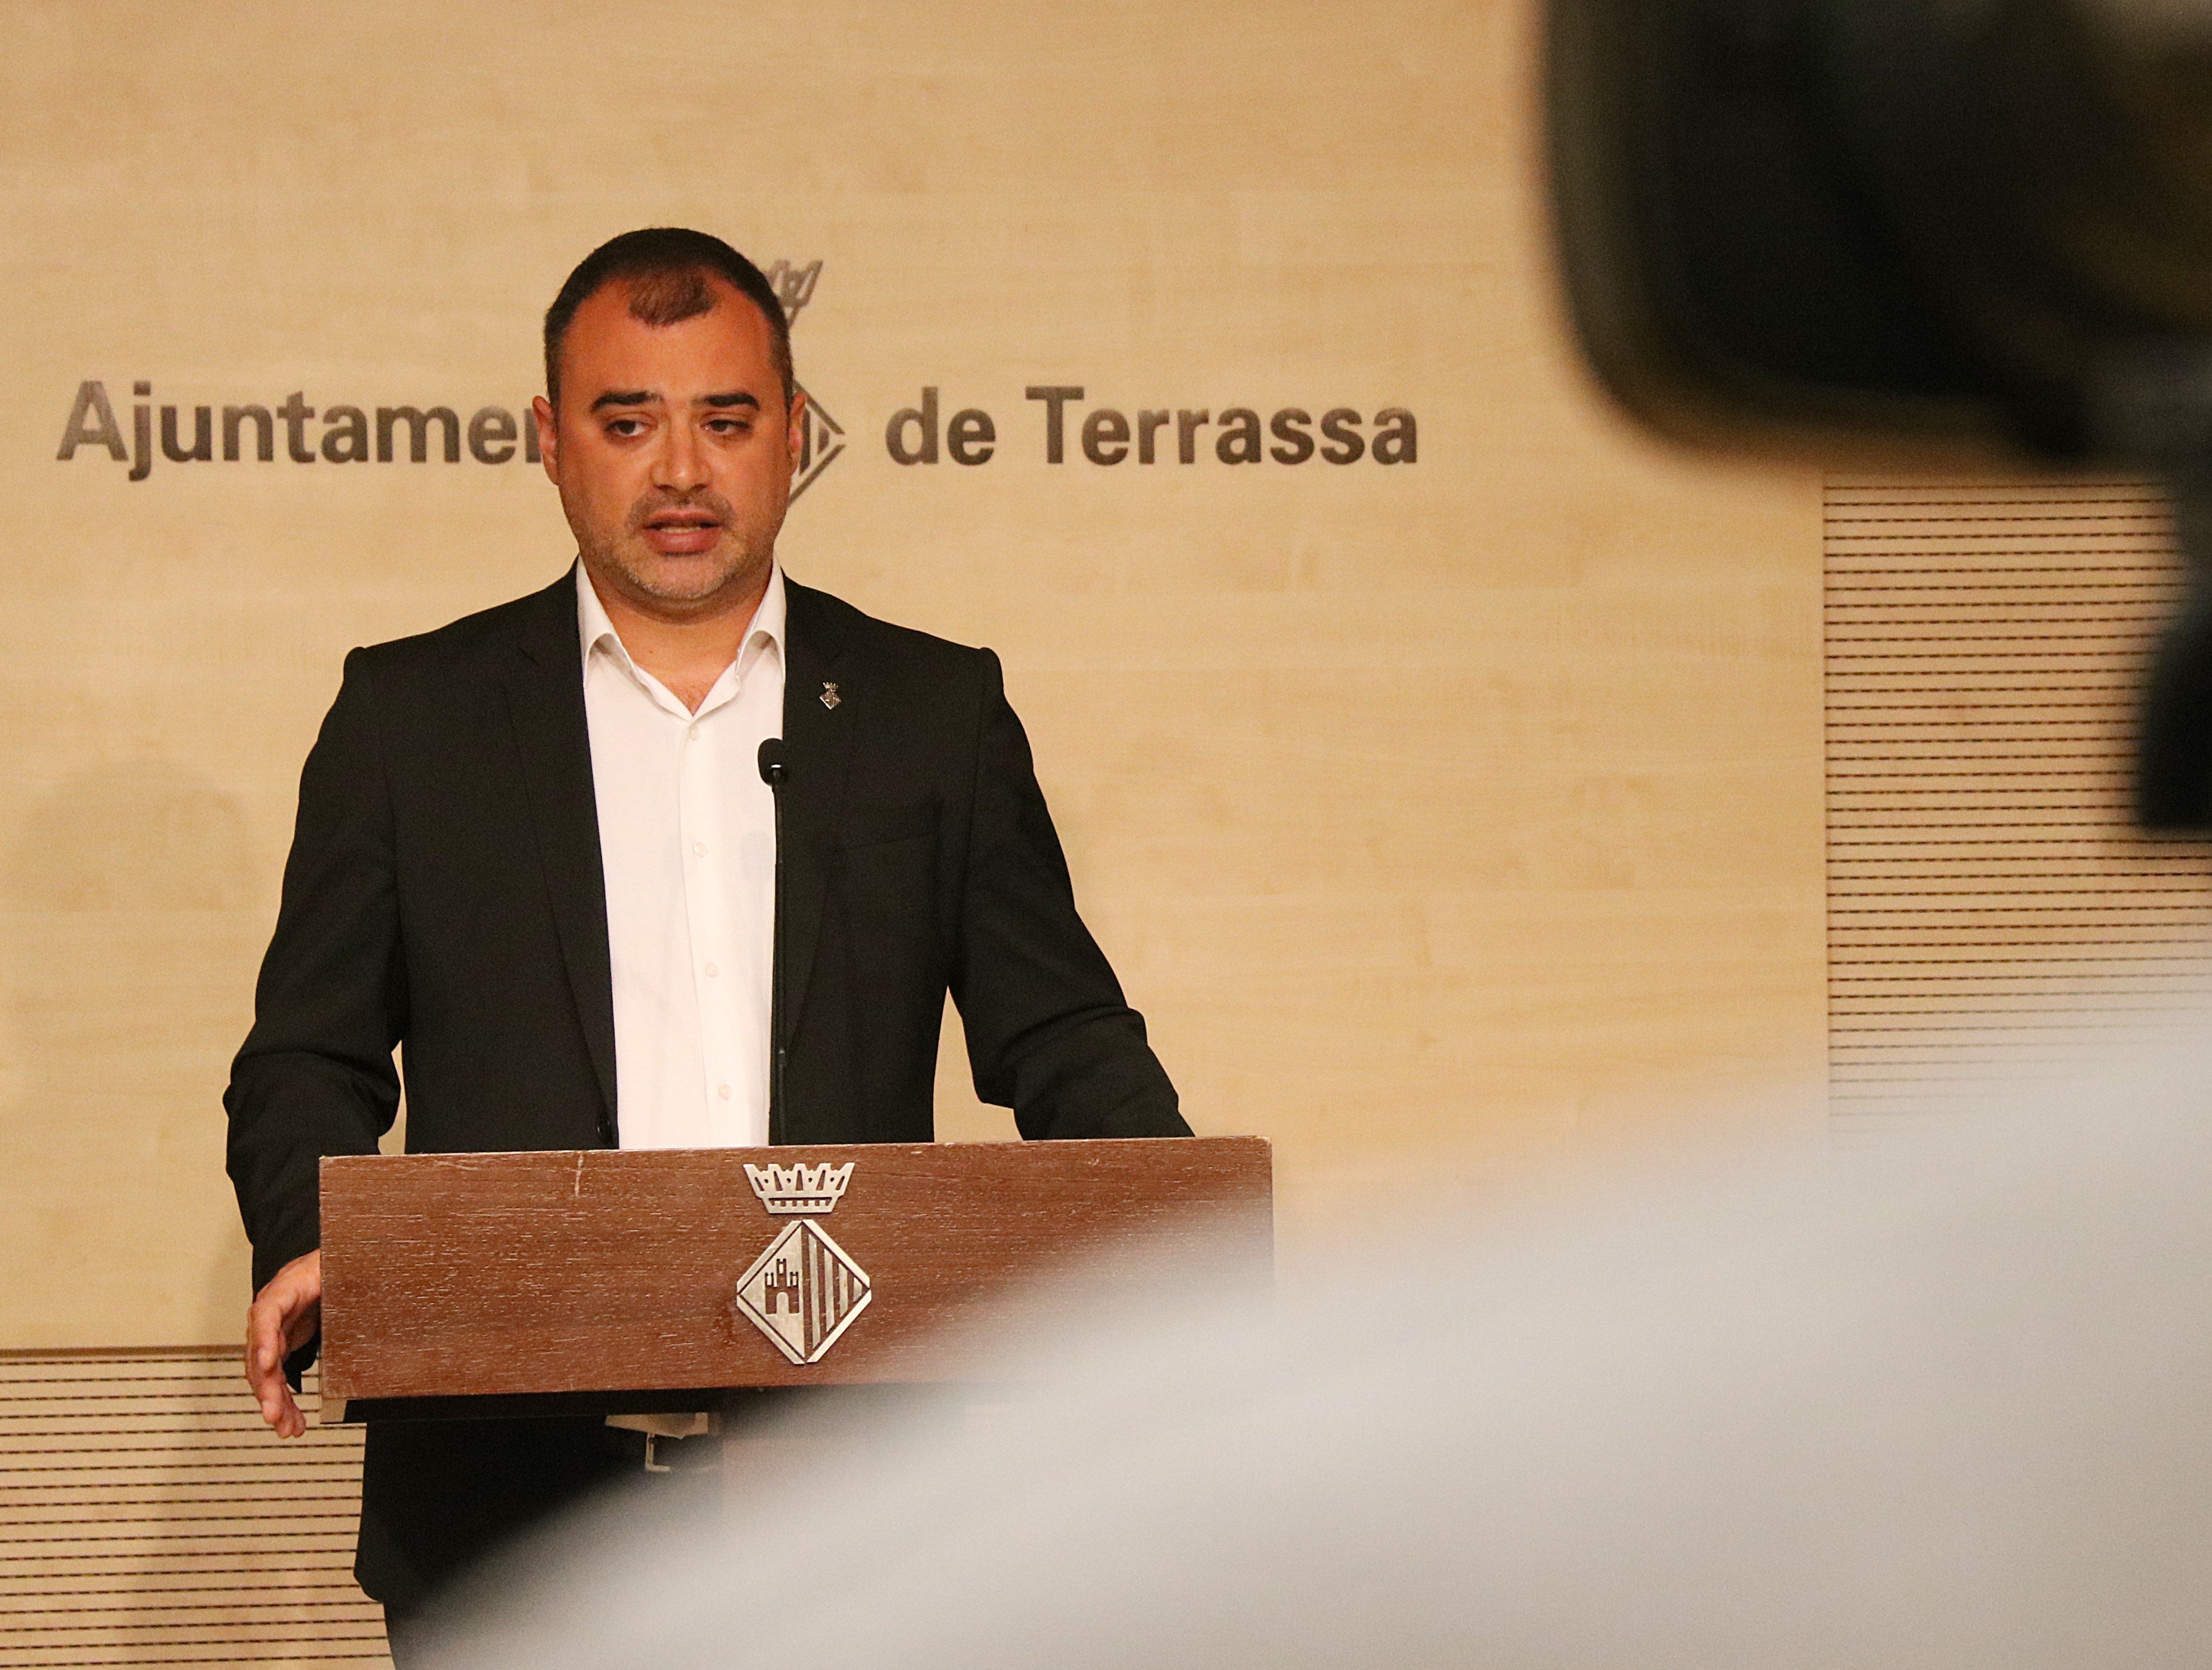 El repugnante comentario que recibe el alcalde de Terrassa, Jordi Ballart, contra su hijo